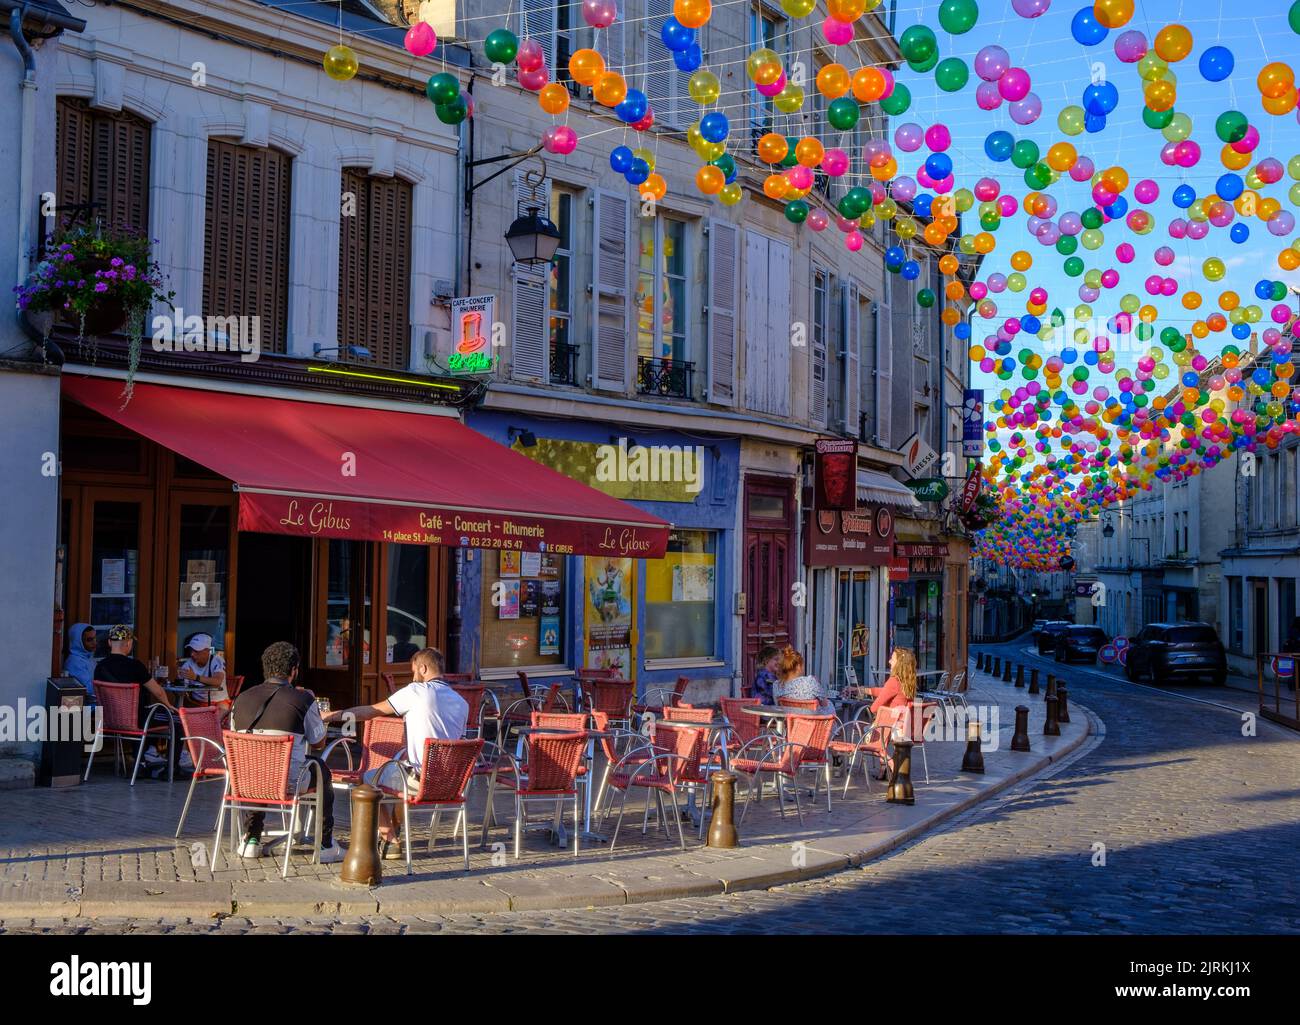 Cafe in strada francese, palloncini sospesi sulla città vecchia di Laon, Francia Foto Stock